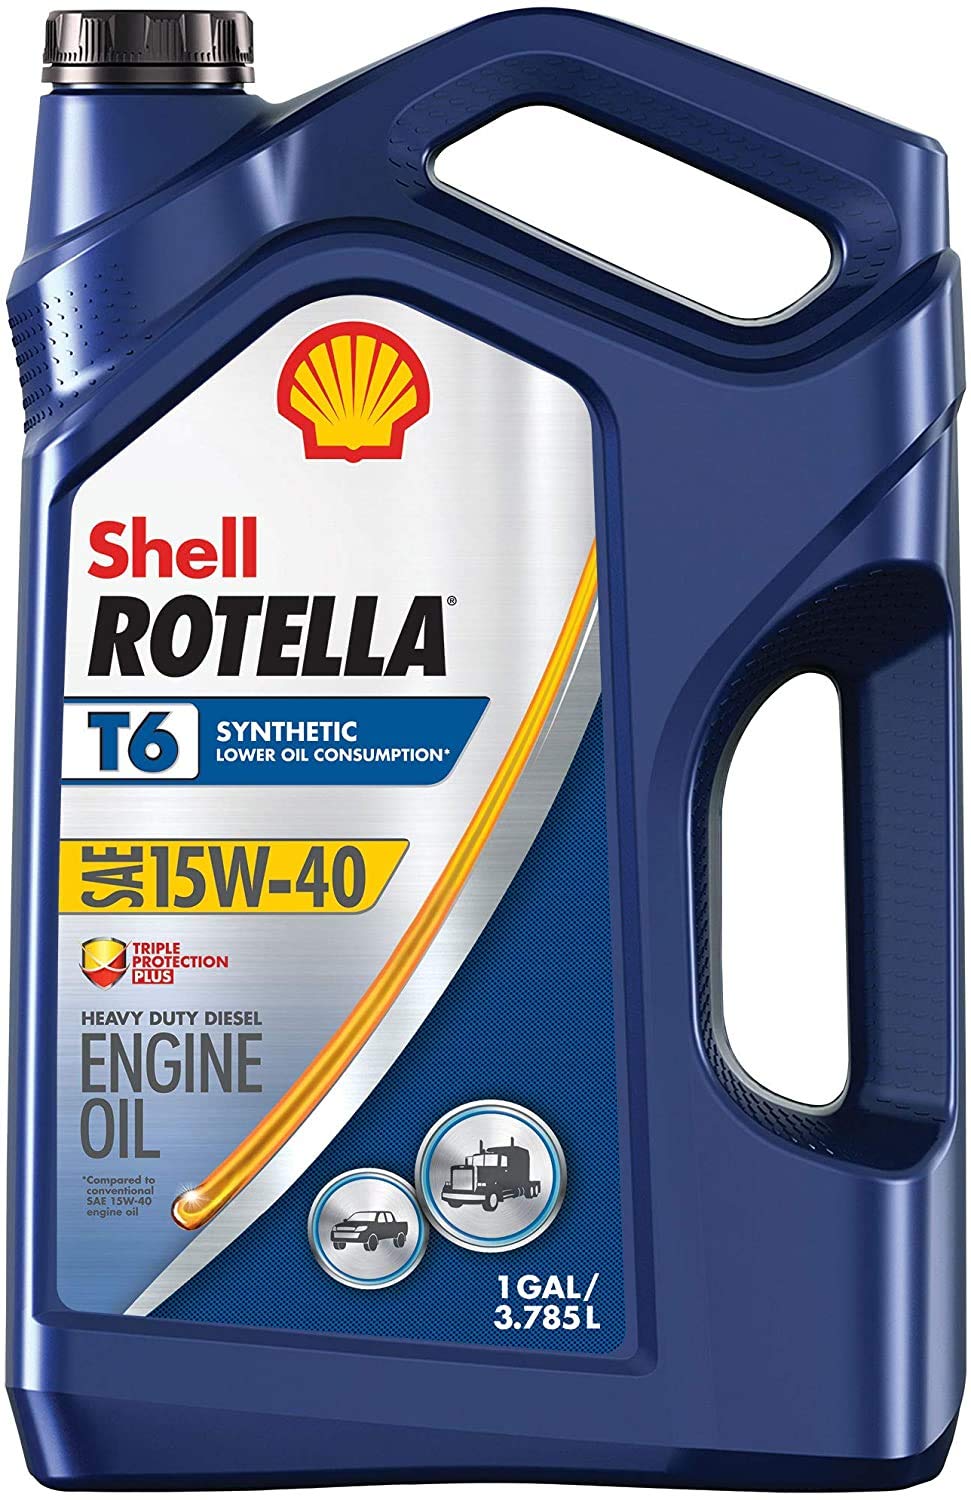 Shell Rotella زيت محرك الديزل T6 التخليقي بالكامل...